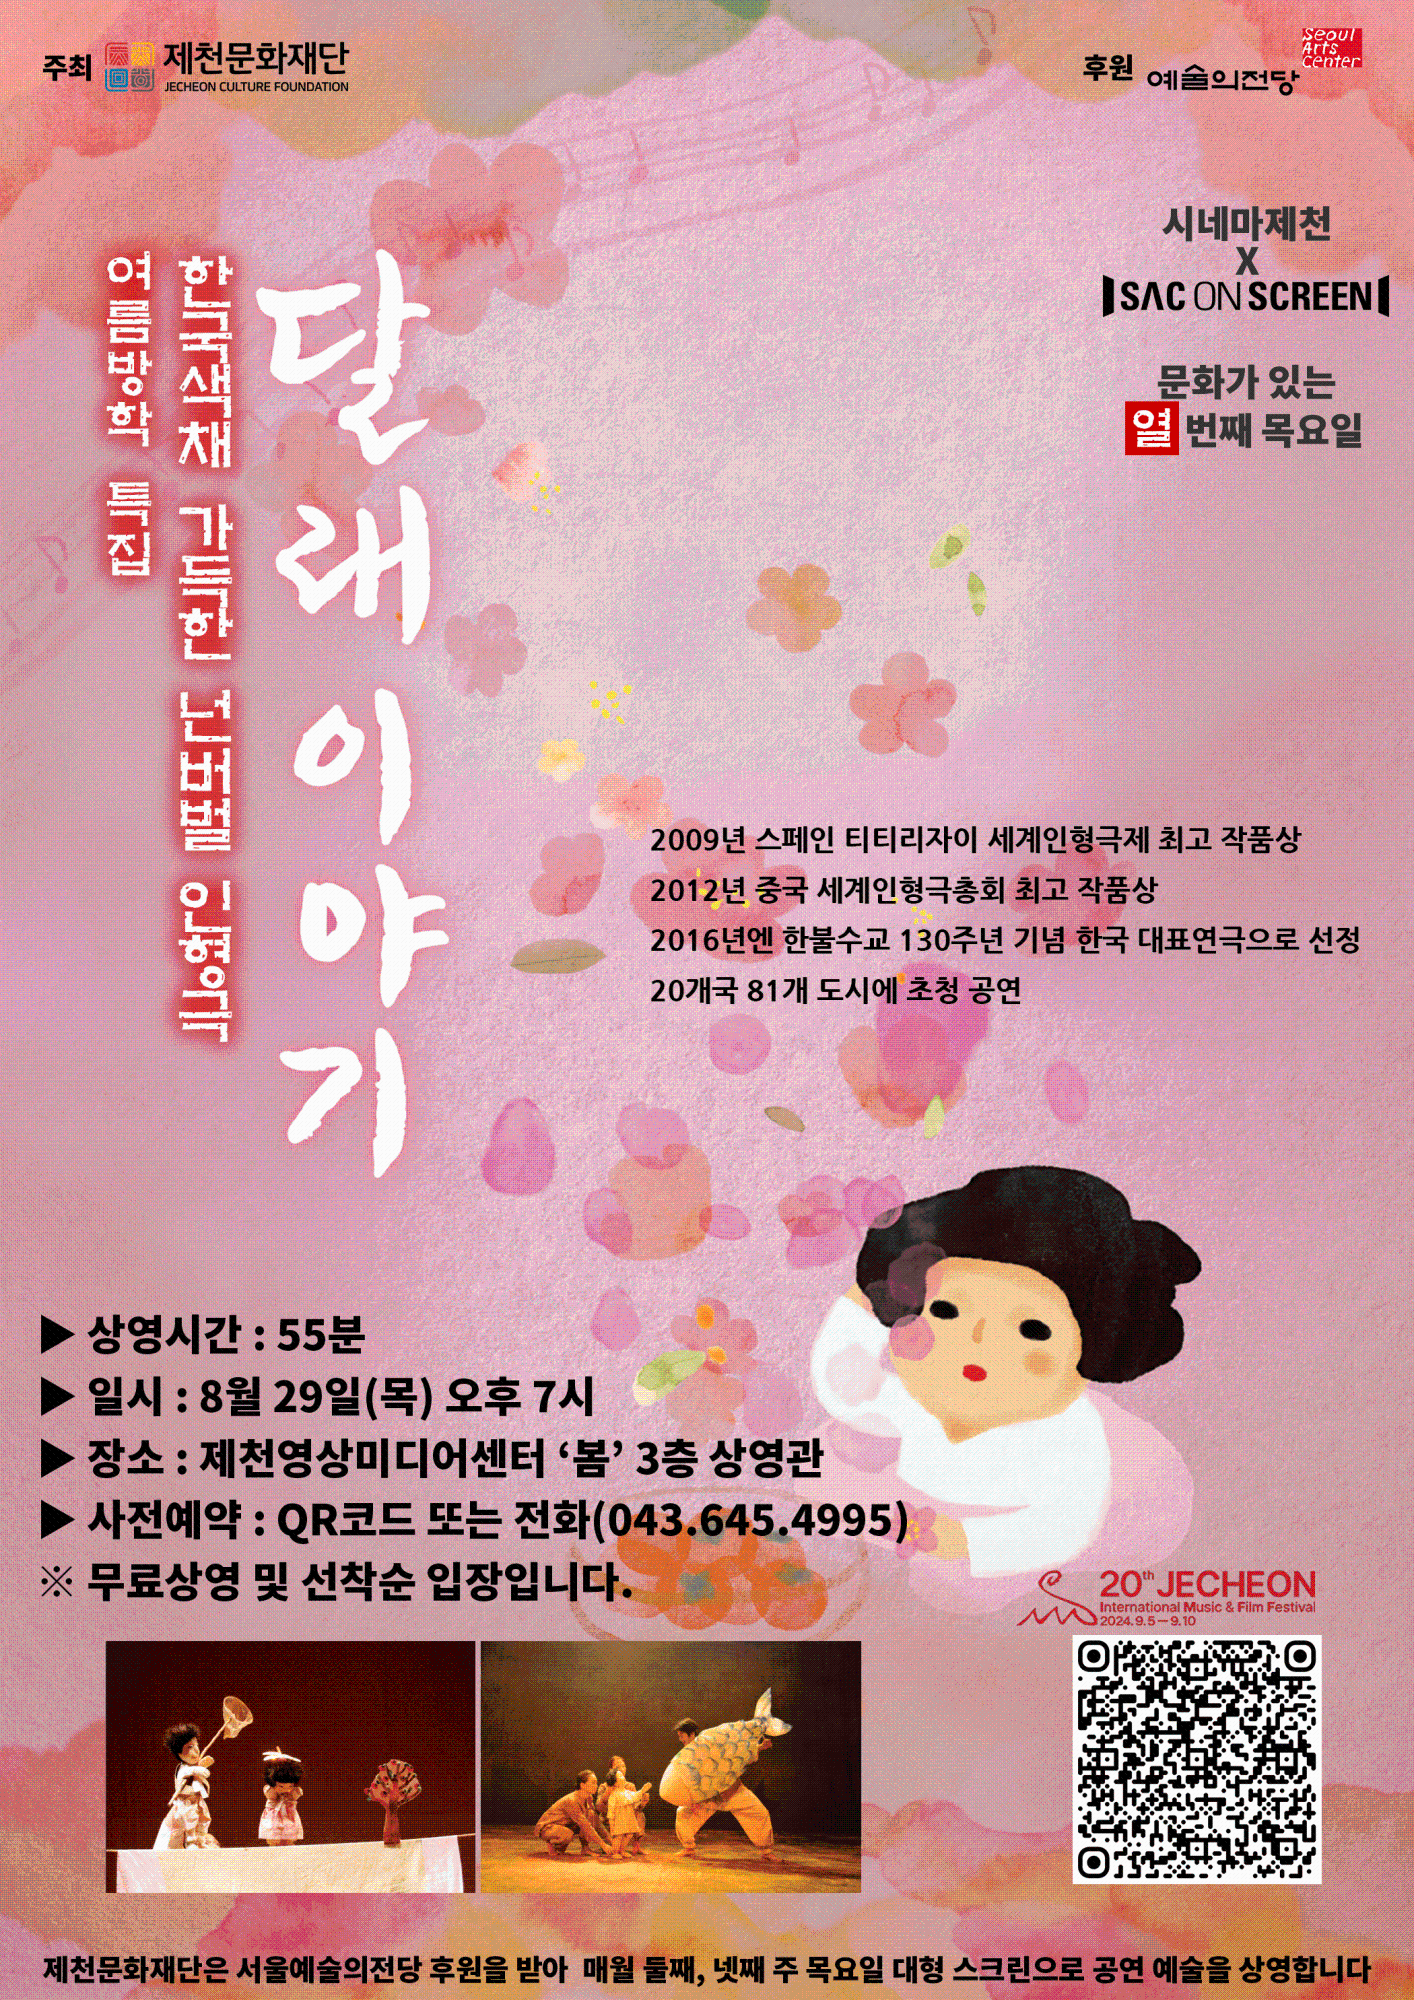 (재)제천문화재단 영상미디어팀_붙임2. 달래이야기 포스터